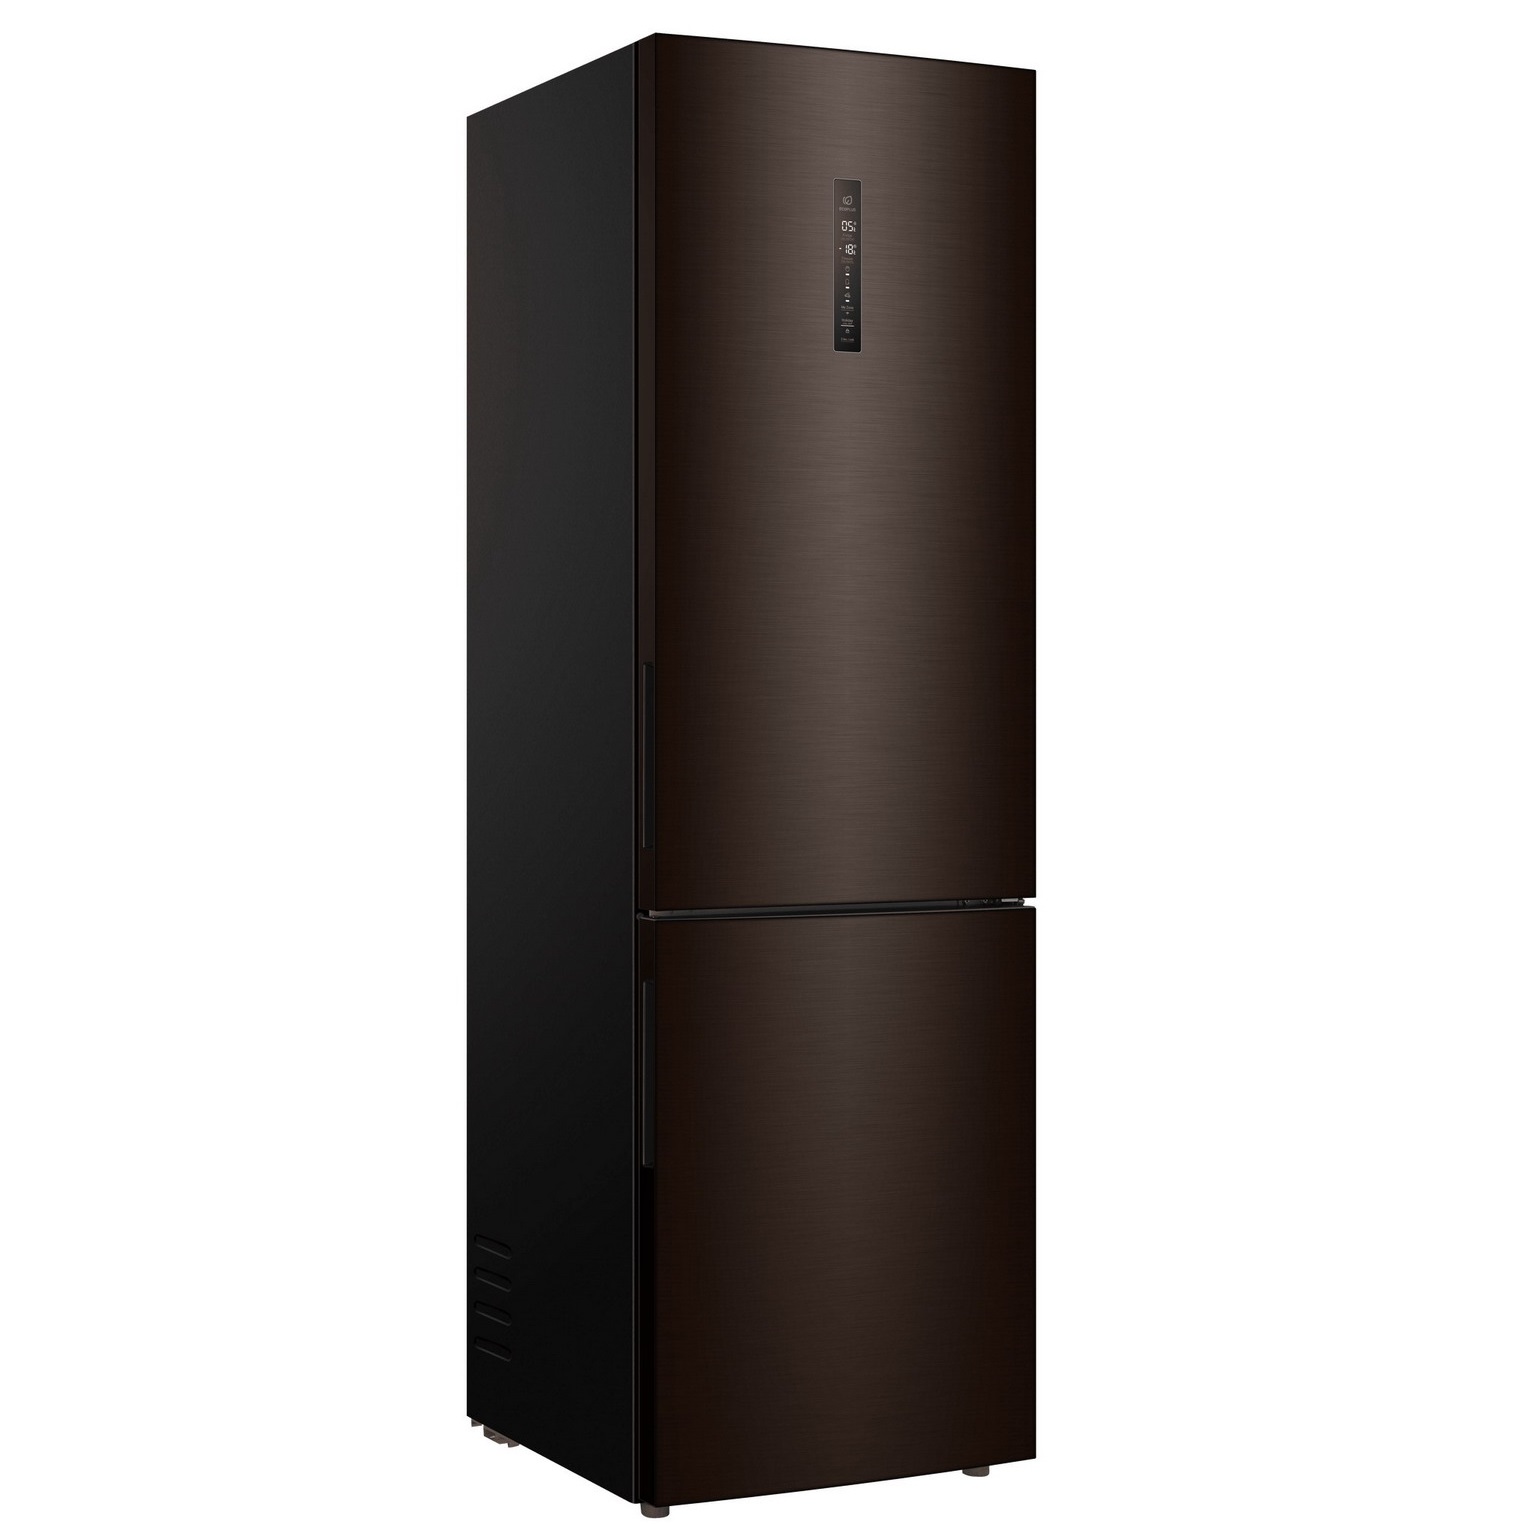 Холодильник Haier C4F740CDBGU1 черный, купить в Москве, цены в интернет-магазинах на Мегамаркет